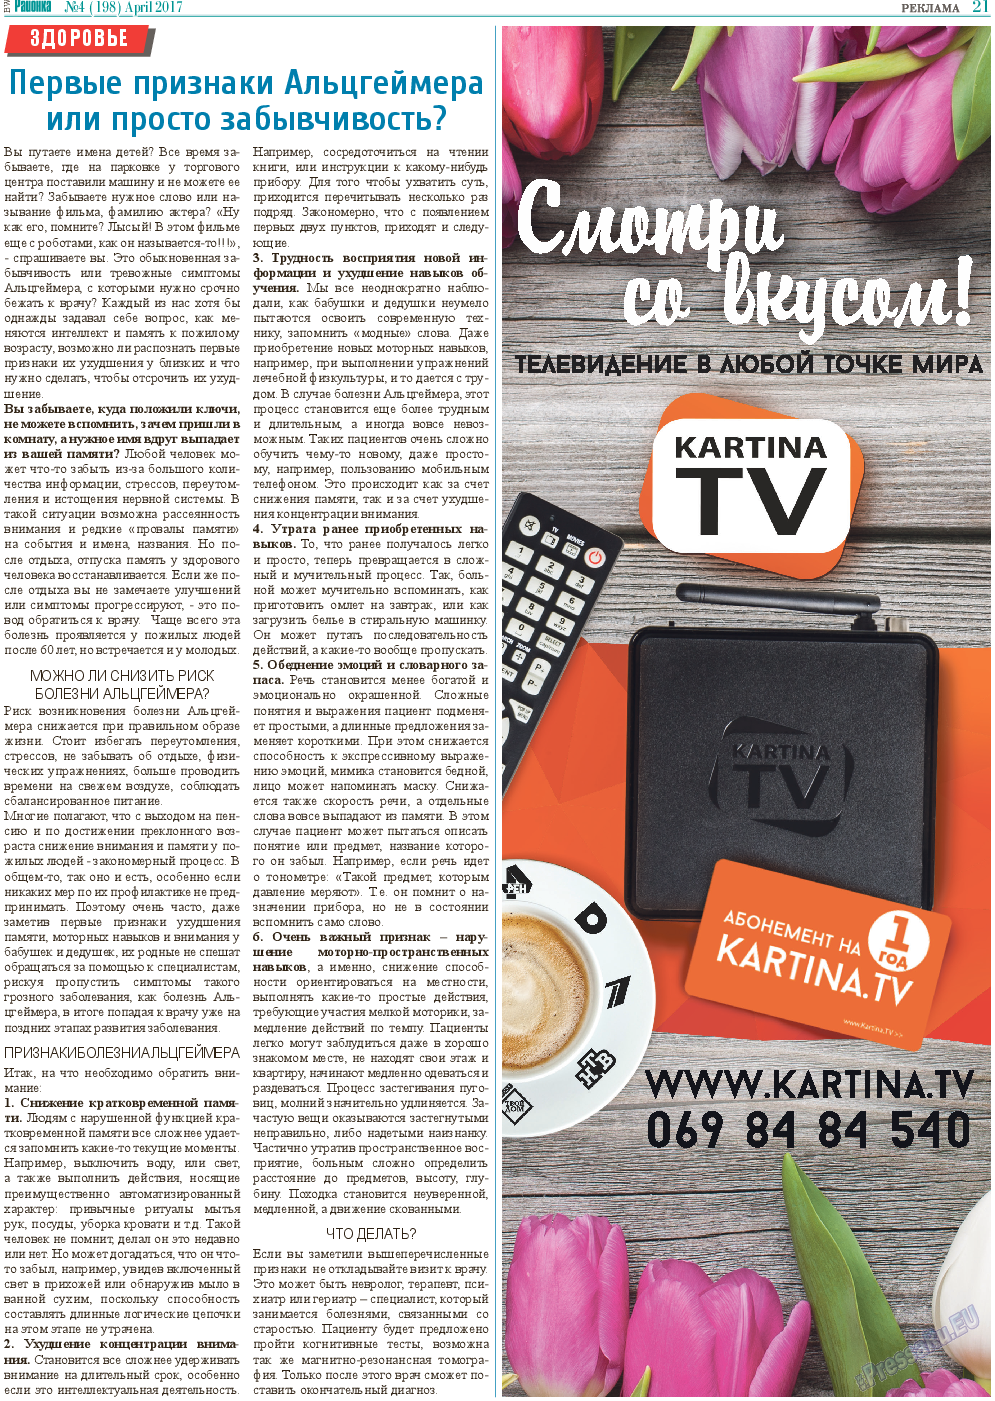 Районка-Süd-West (газета). 2017 год, номер 4, стр. 21